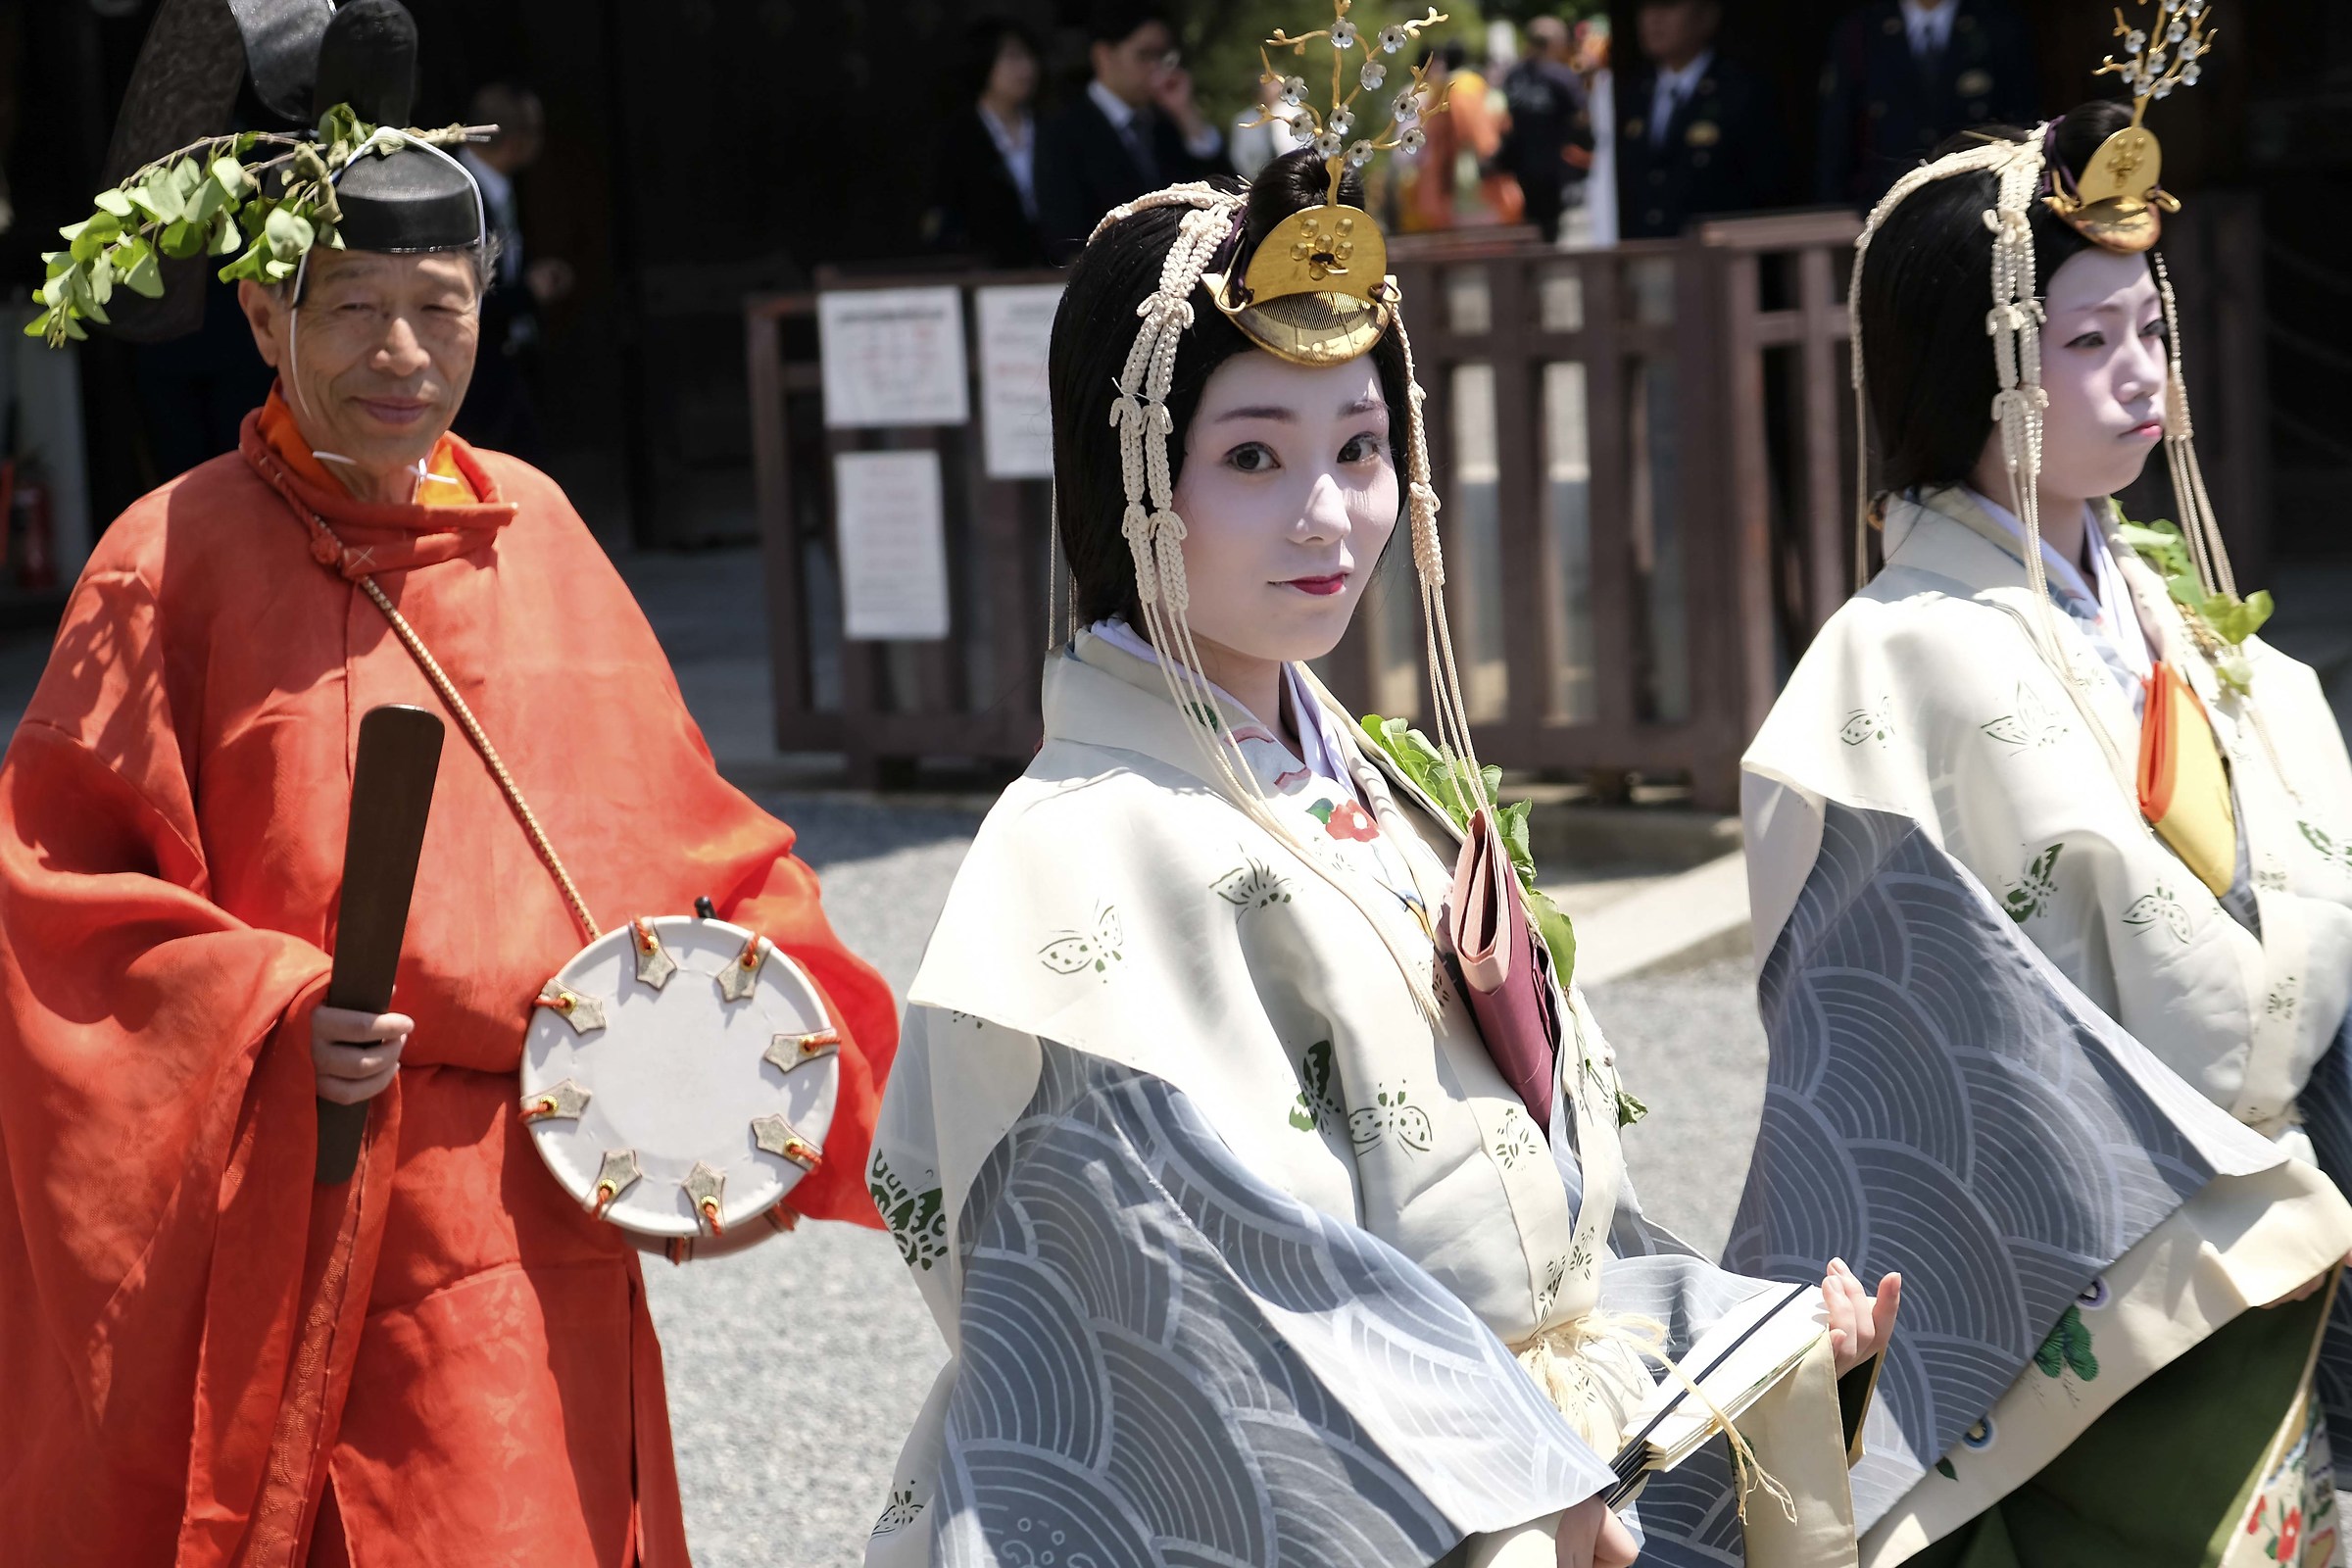 Kyoto - The historical parade of May 15th...